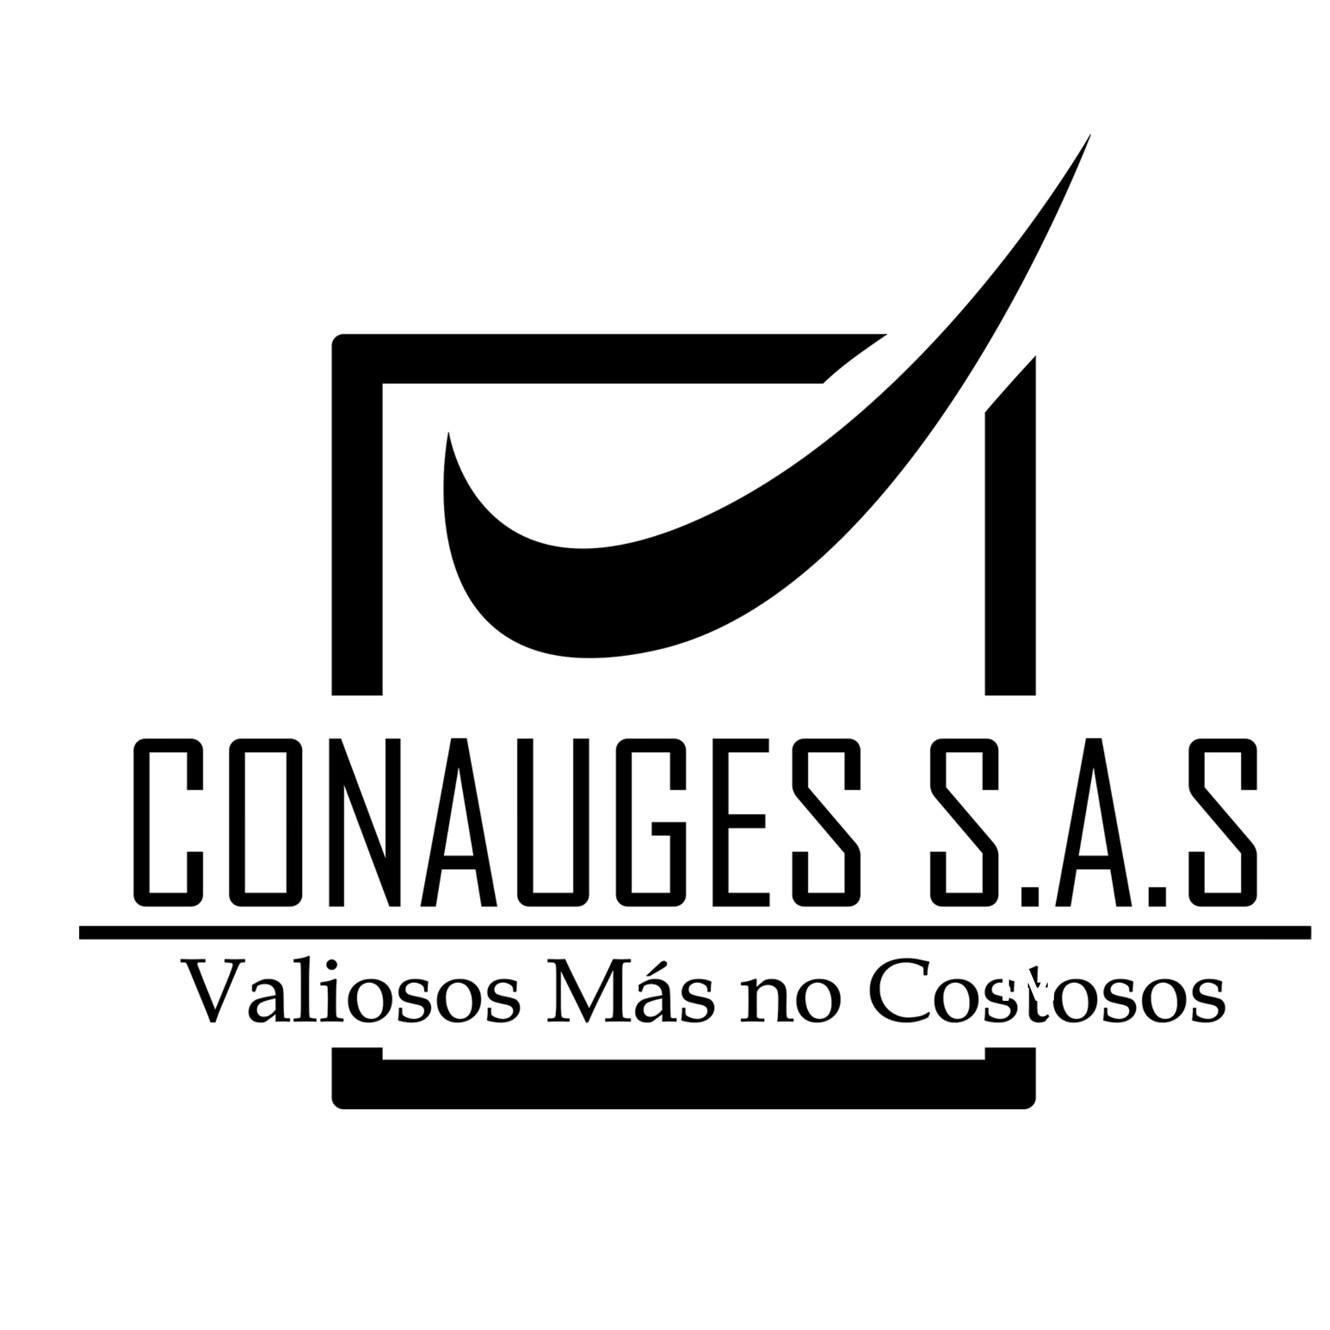 Consultores & Auditores en Gestion SAS (CONAUGES)